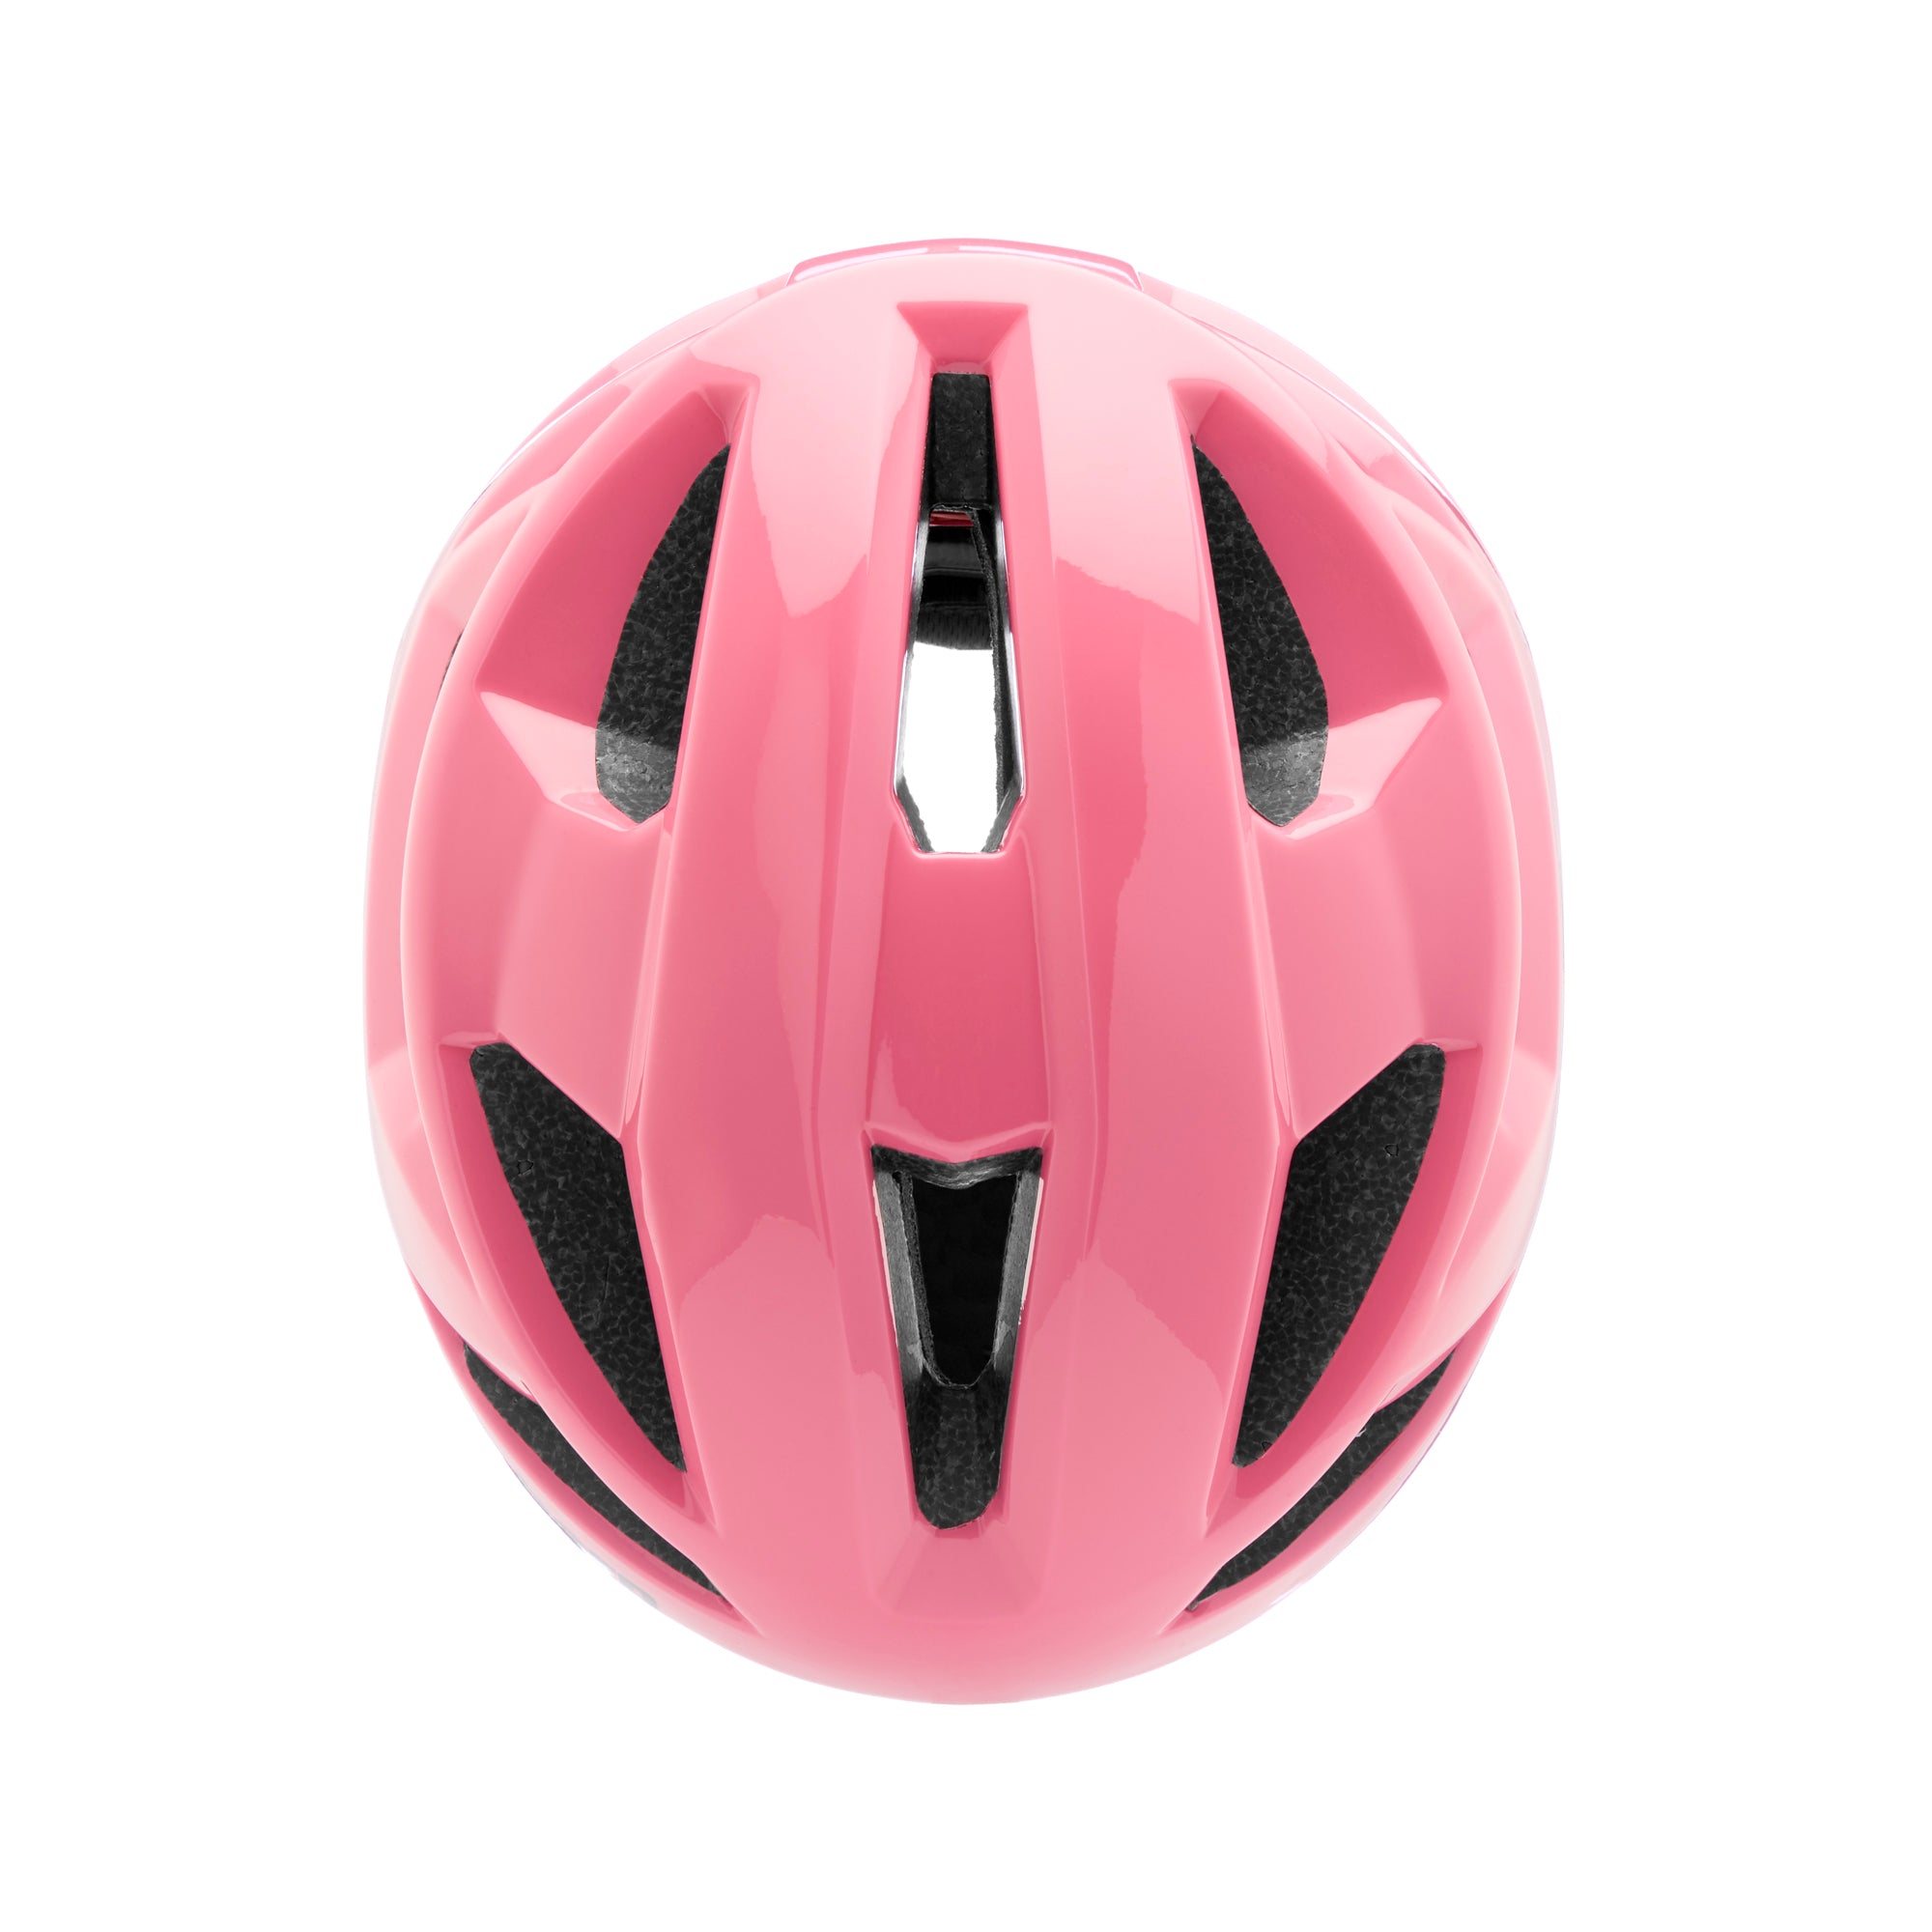 BERN - FL-1 Libre (Hot Pink) Helmet